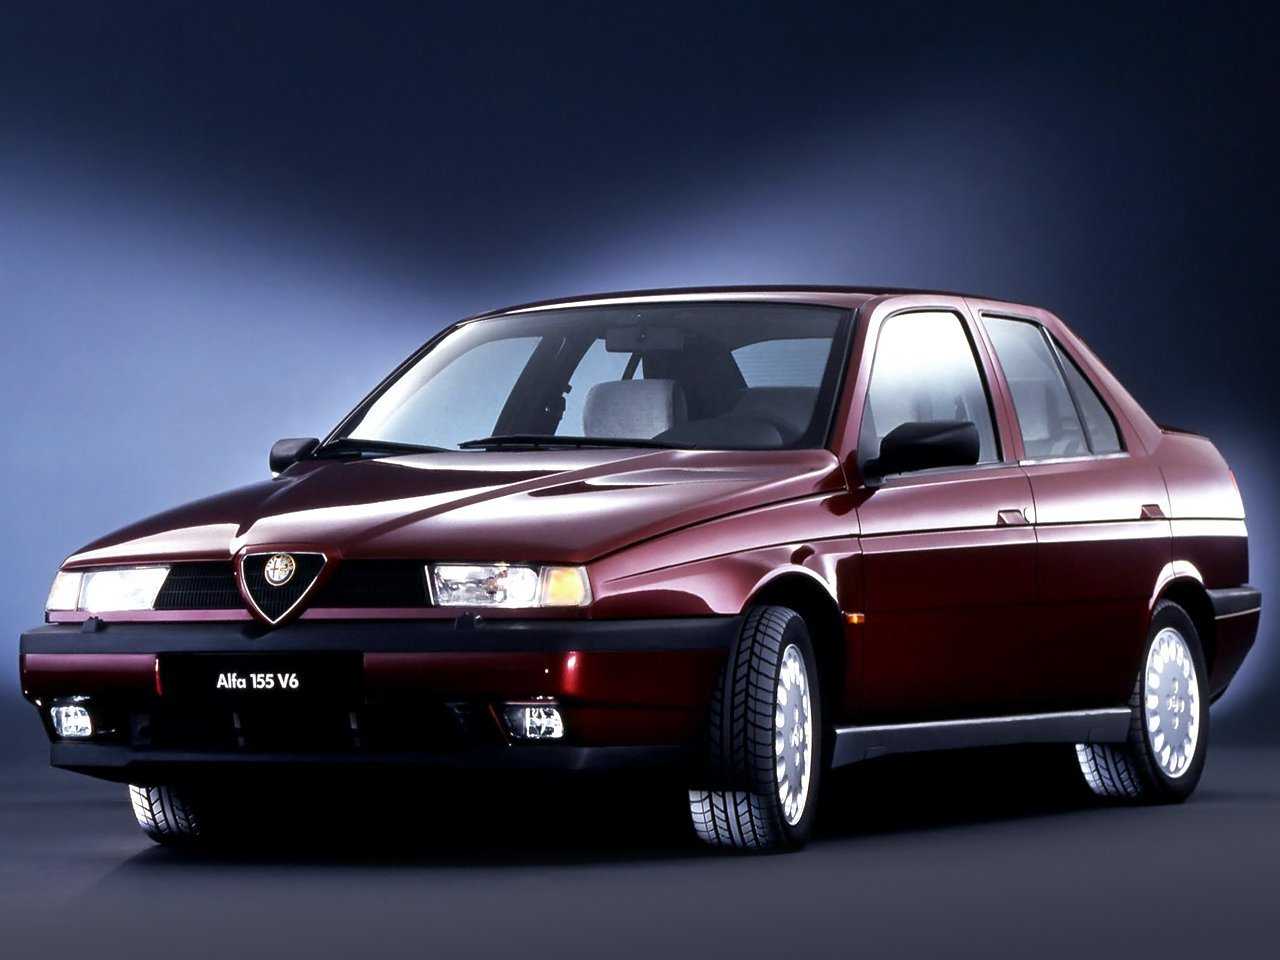 Alfa Romeo 155 полный обзор автомобиля фото видео сильные и слабые места